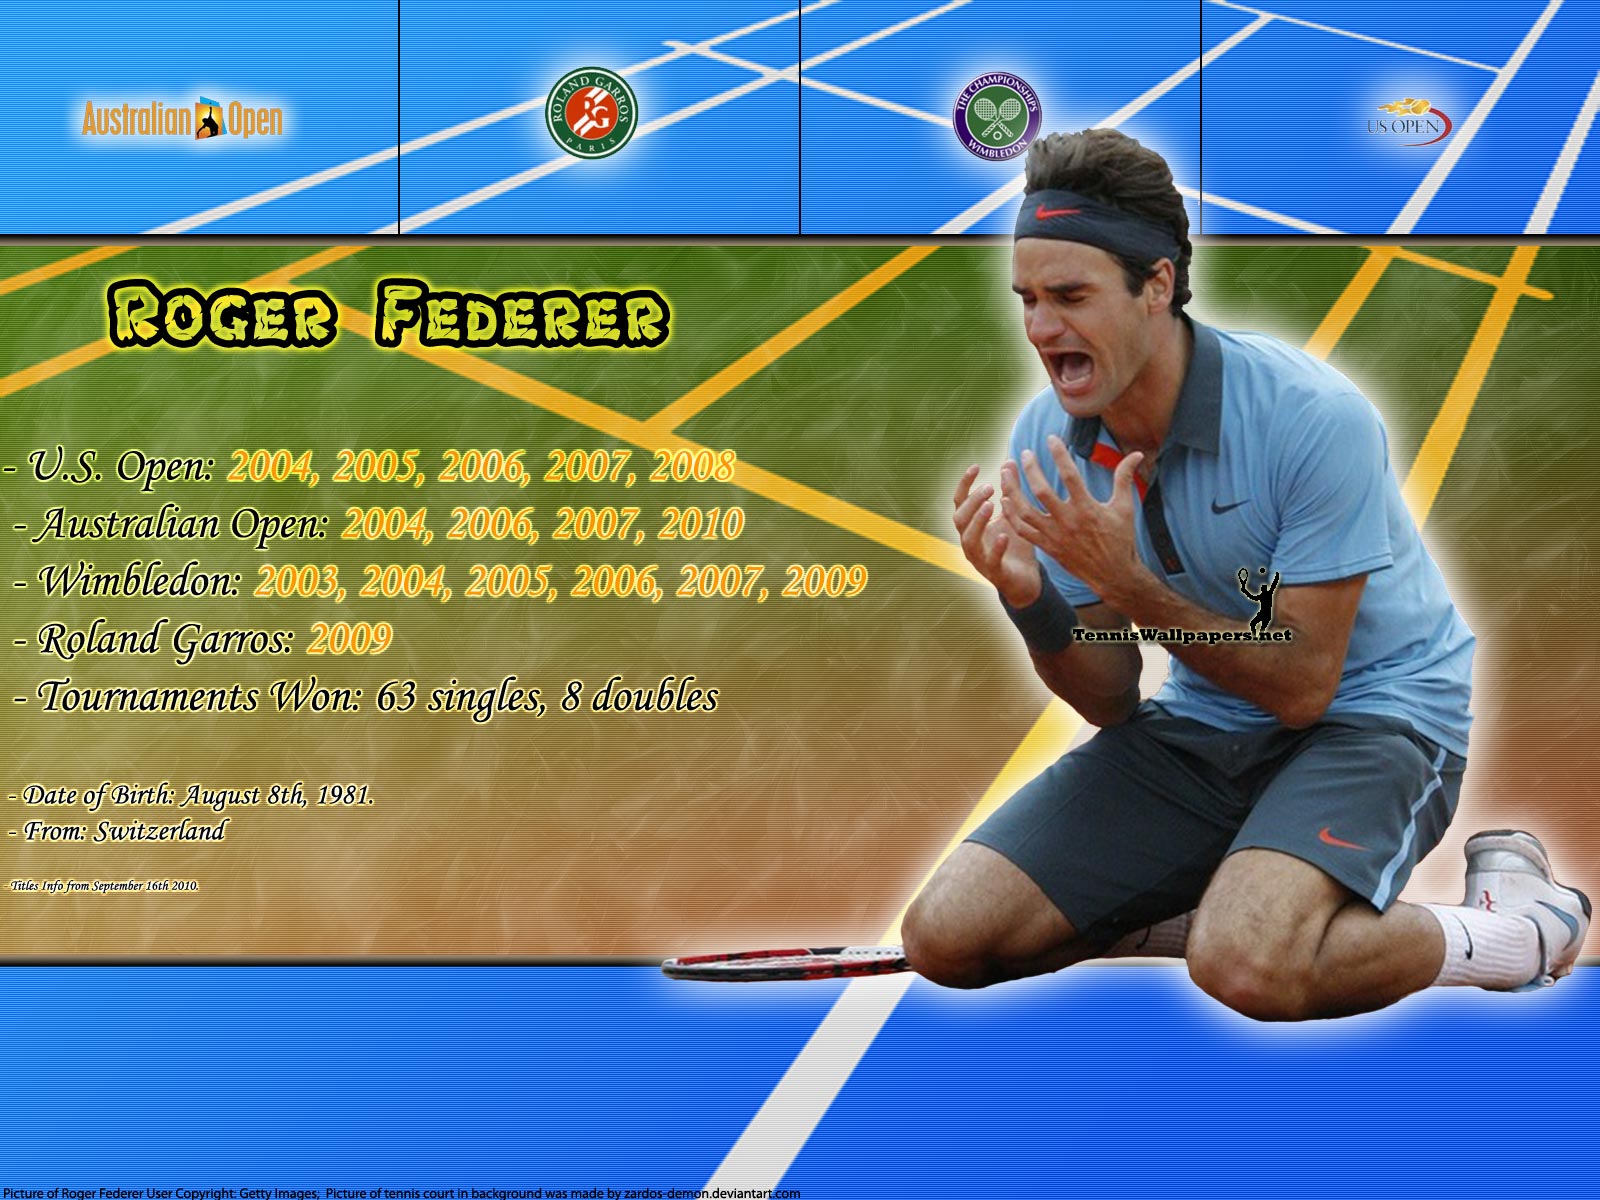 Roger Federer Titles Info - Roger Federer 16 Grand Slams , HD Wallpaper & Backgrounds